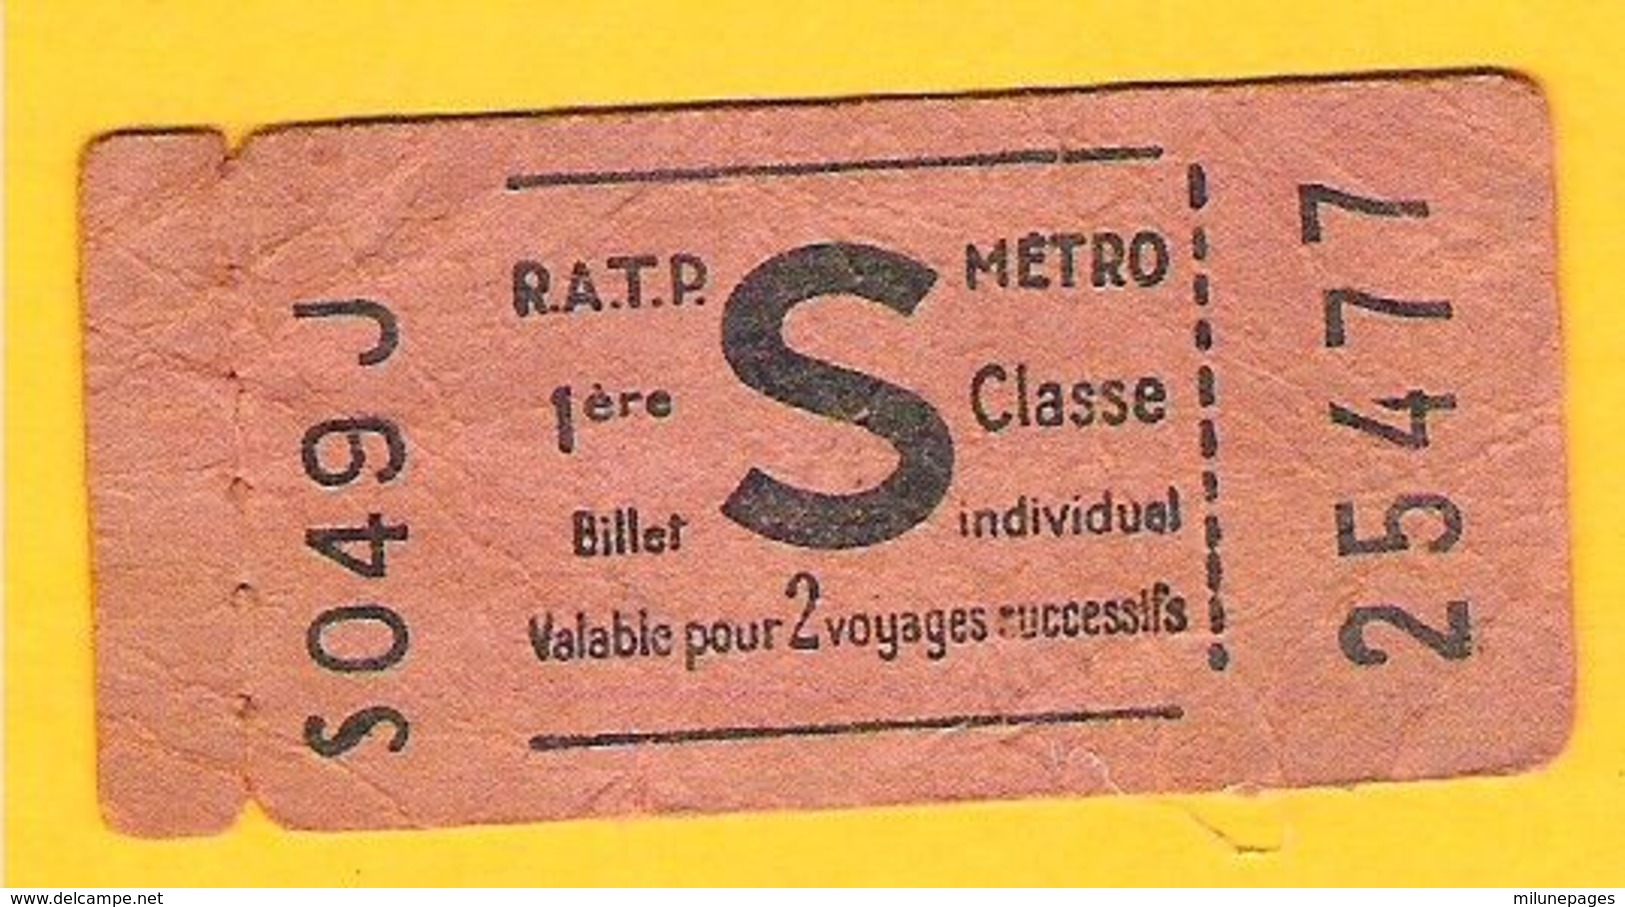 Ticket De Métro RATP 1ère Classe Valable Pour 2 Voyages Successifs Non Poinçonné Lettre S - Europa